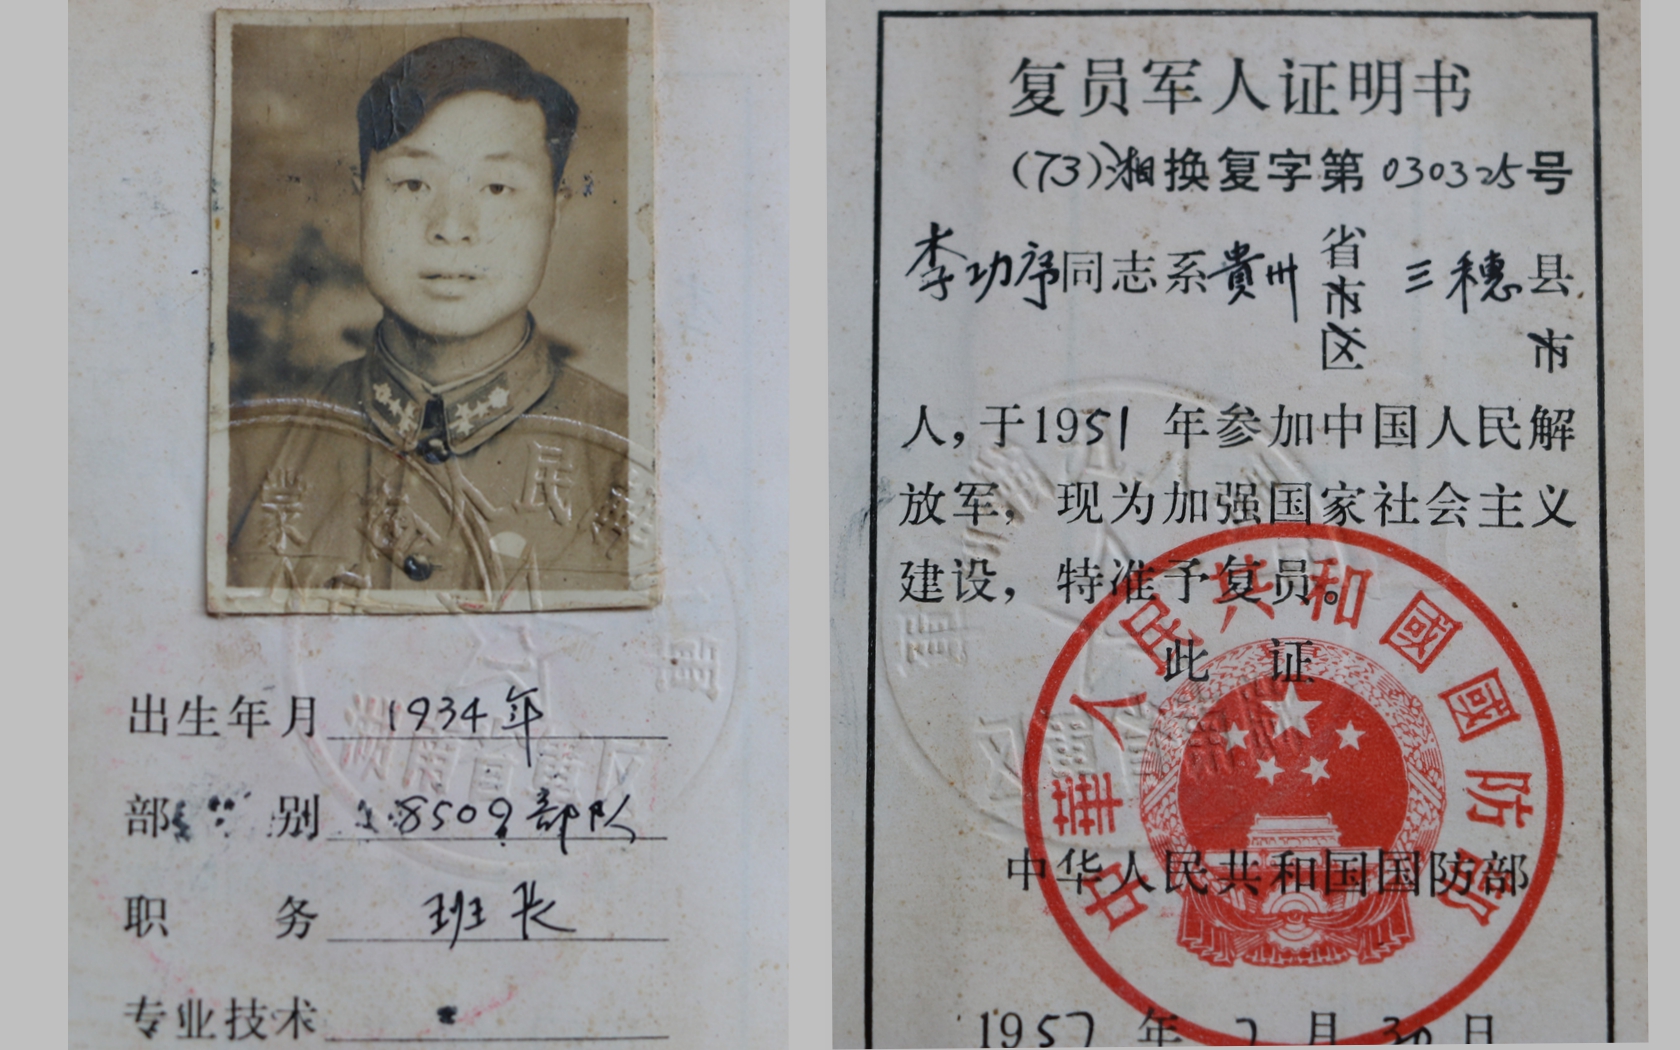 1957年由中华人民共和国国防部授予李功序的《复员军人证明书》